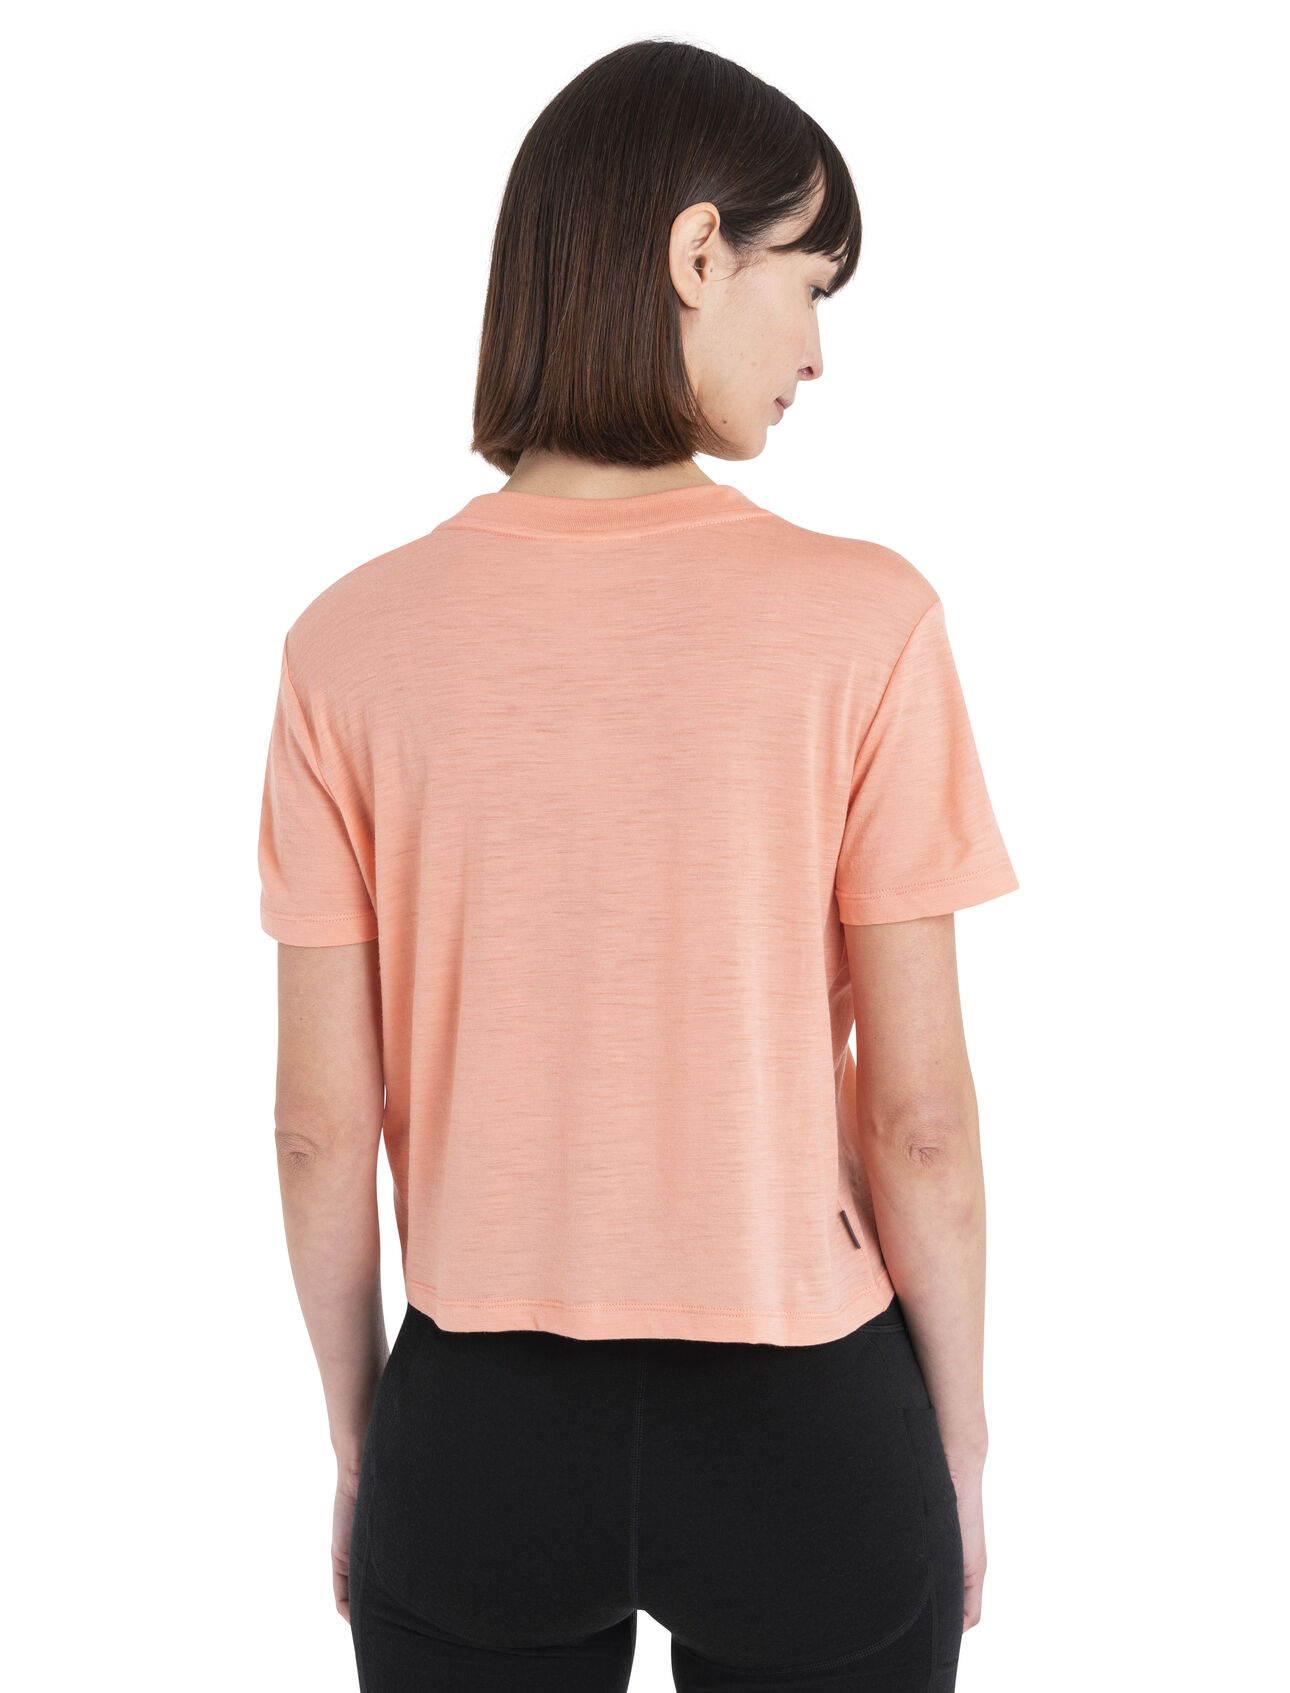 Women's Merino 150 Tech Lite III Crop T-Shirt